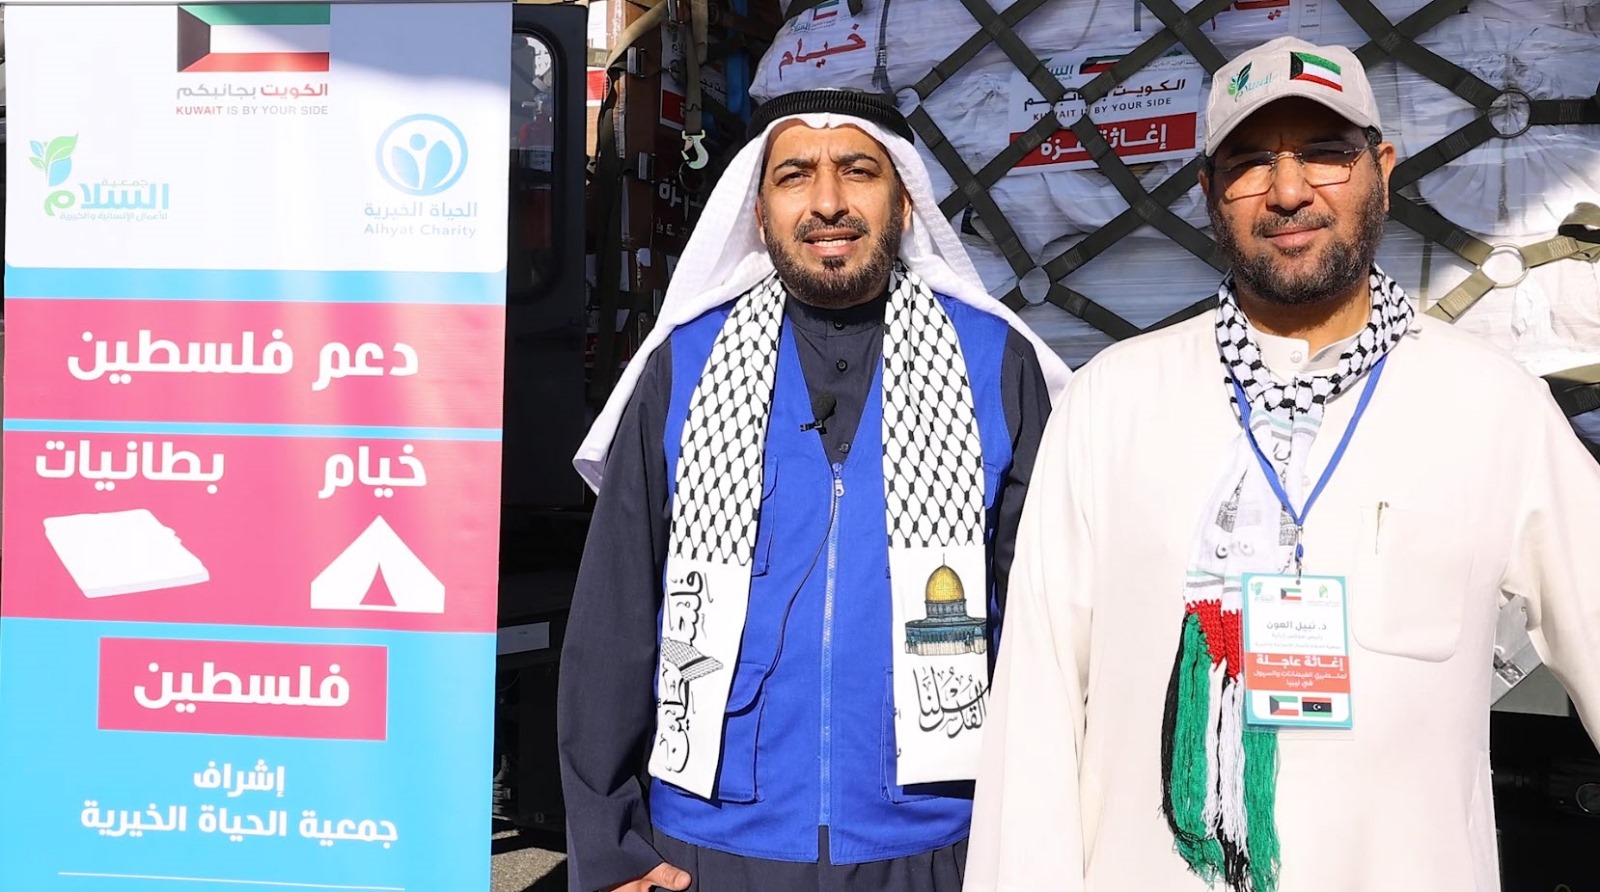  الحياة الخيرية : شحن 46 طن تمور و2000 بطانية و150 خيمة لغزة من خلال الجسر الجوي الكويتي